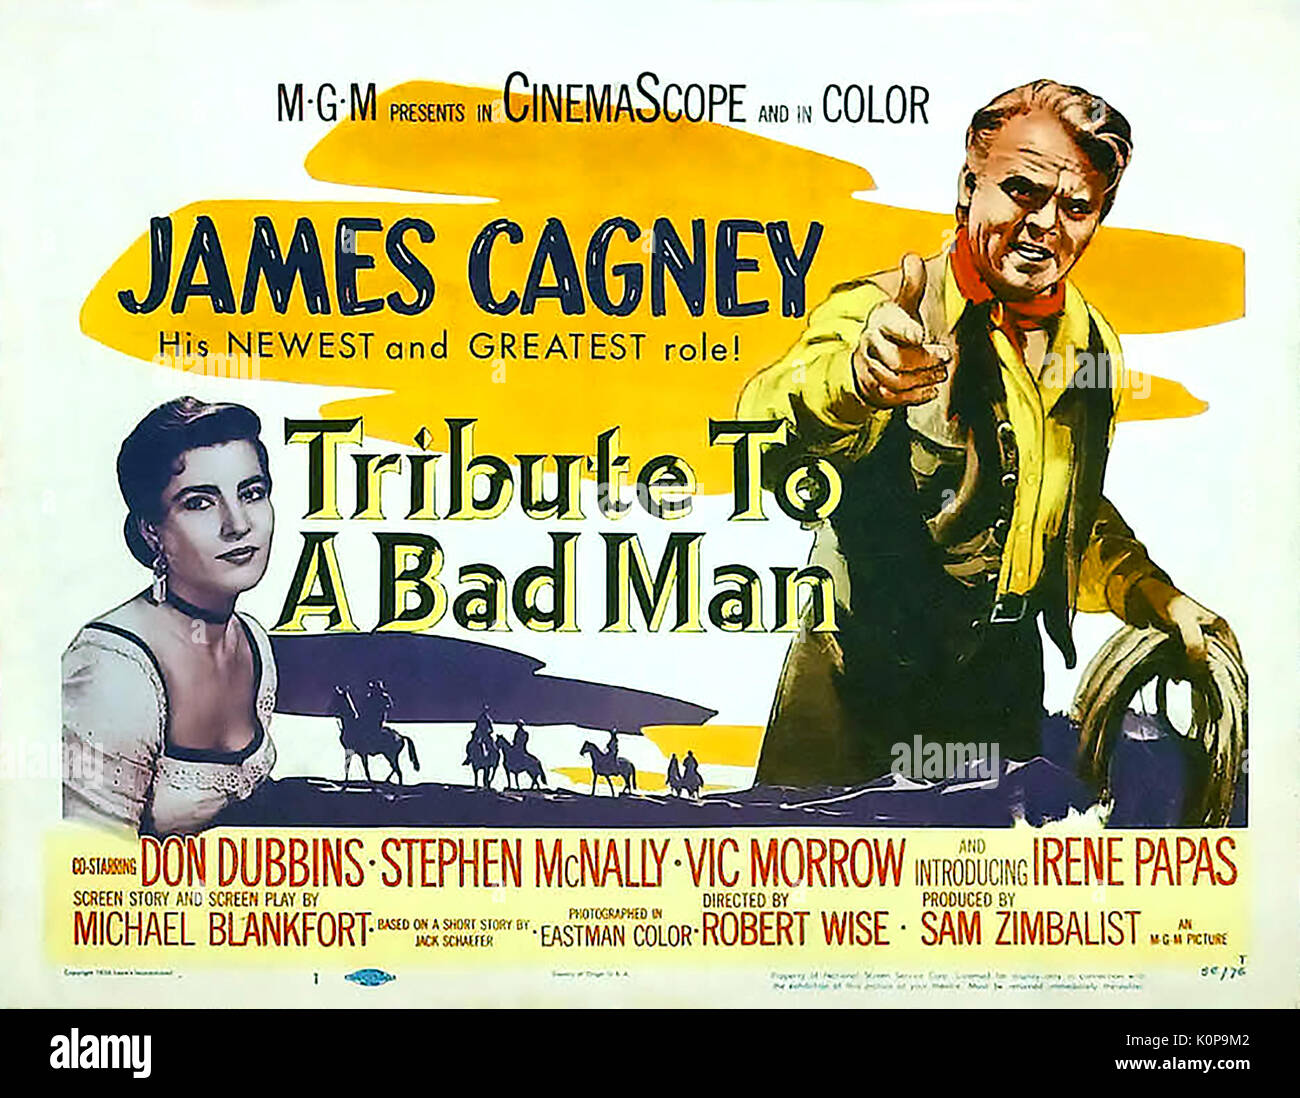 Omaggio ad un uomo cattivo 1956 MGM Western film con James Cagney e Irene Papas Foto Stock